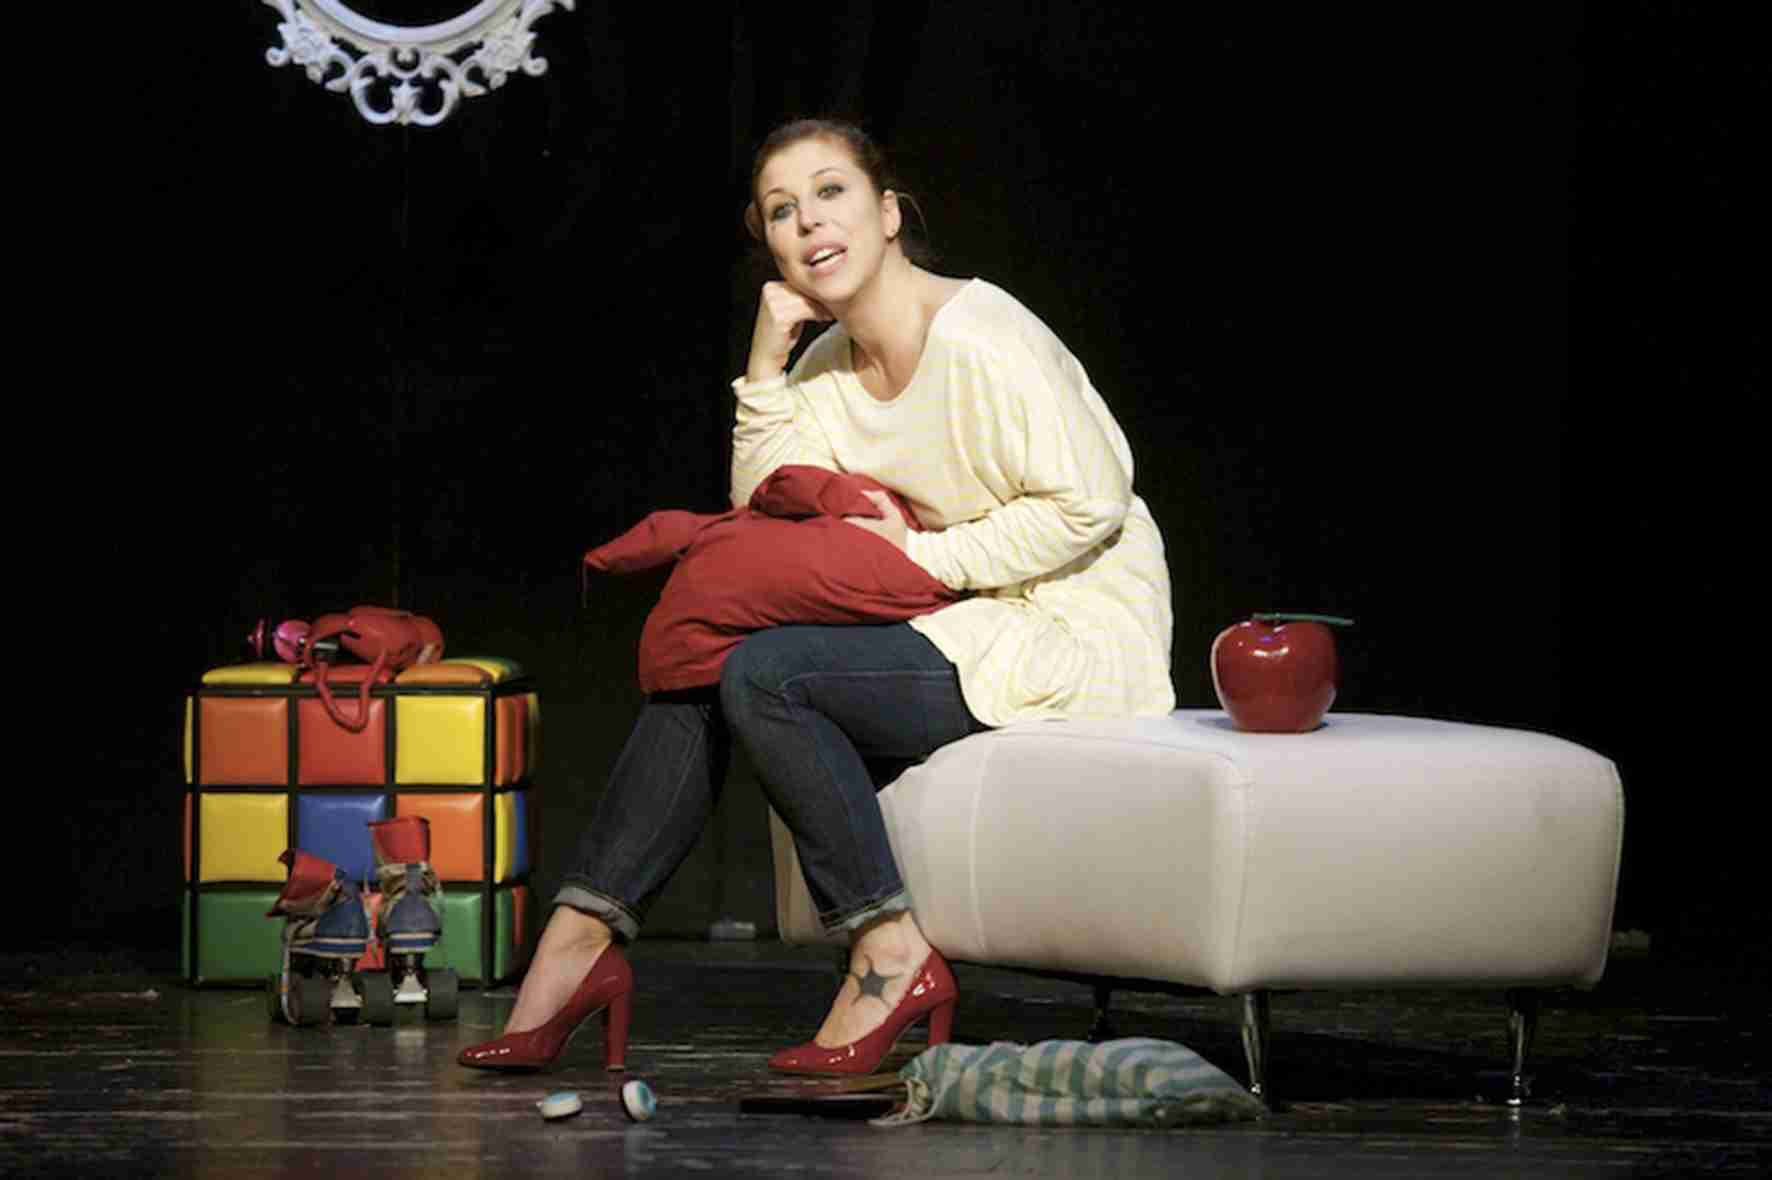  Michela Andreozzi in “TI VUOI METTERE CON ME? L’amore al Tempo delle Mele” al Teatro Ambra di Roma